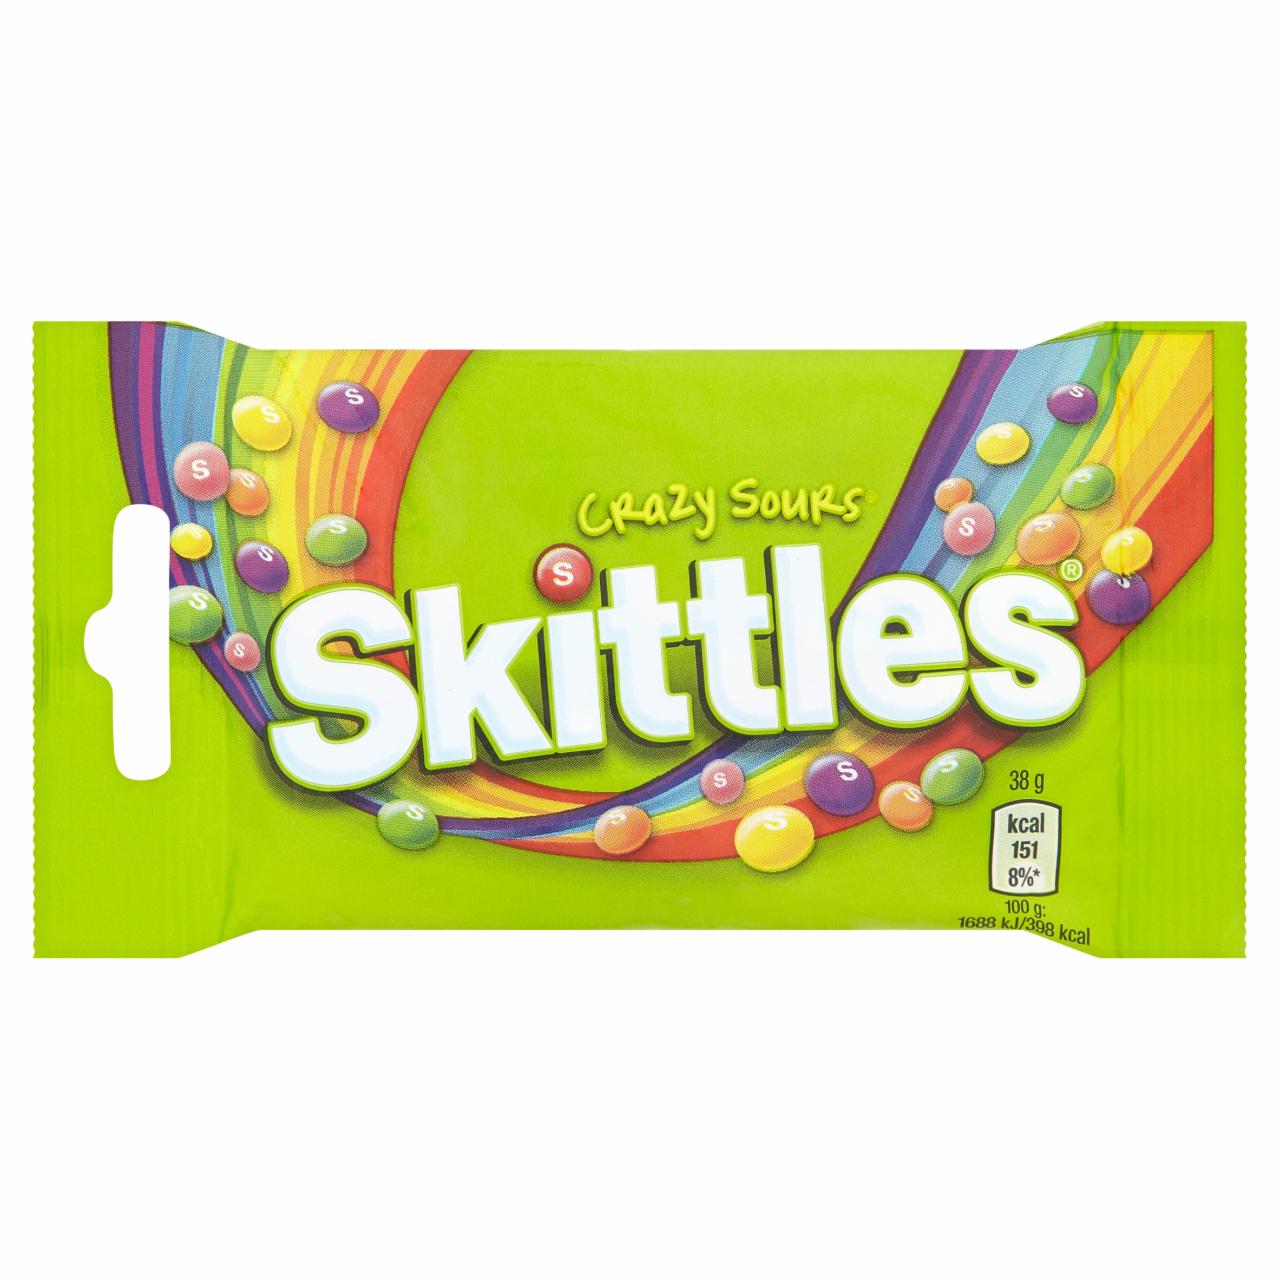 Képek - Skittles Crazy Sours savanyú gyümölcsízű cukordrazsé ropogós cukormázban 38 g